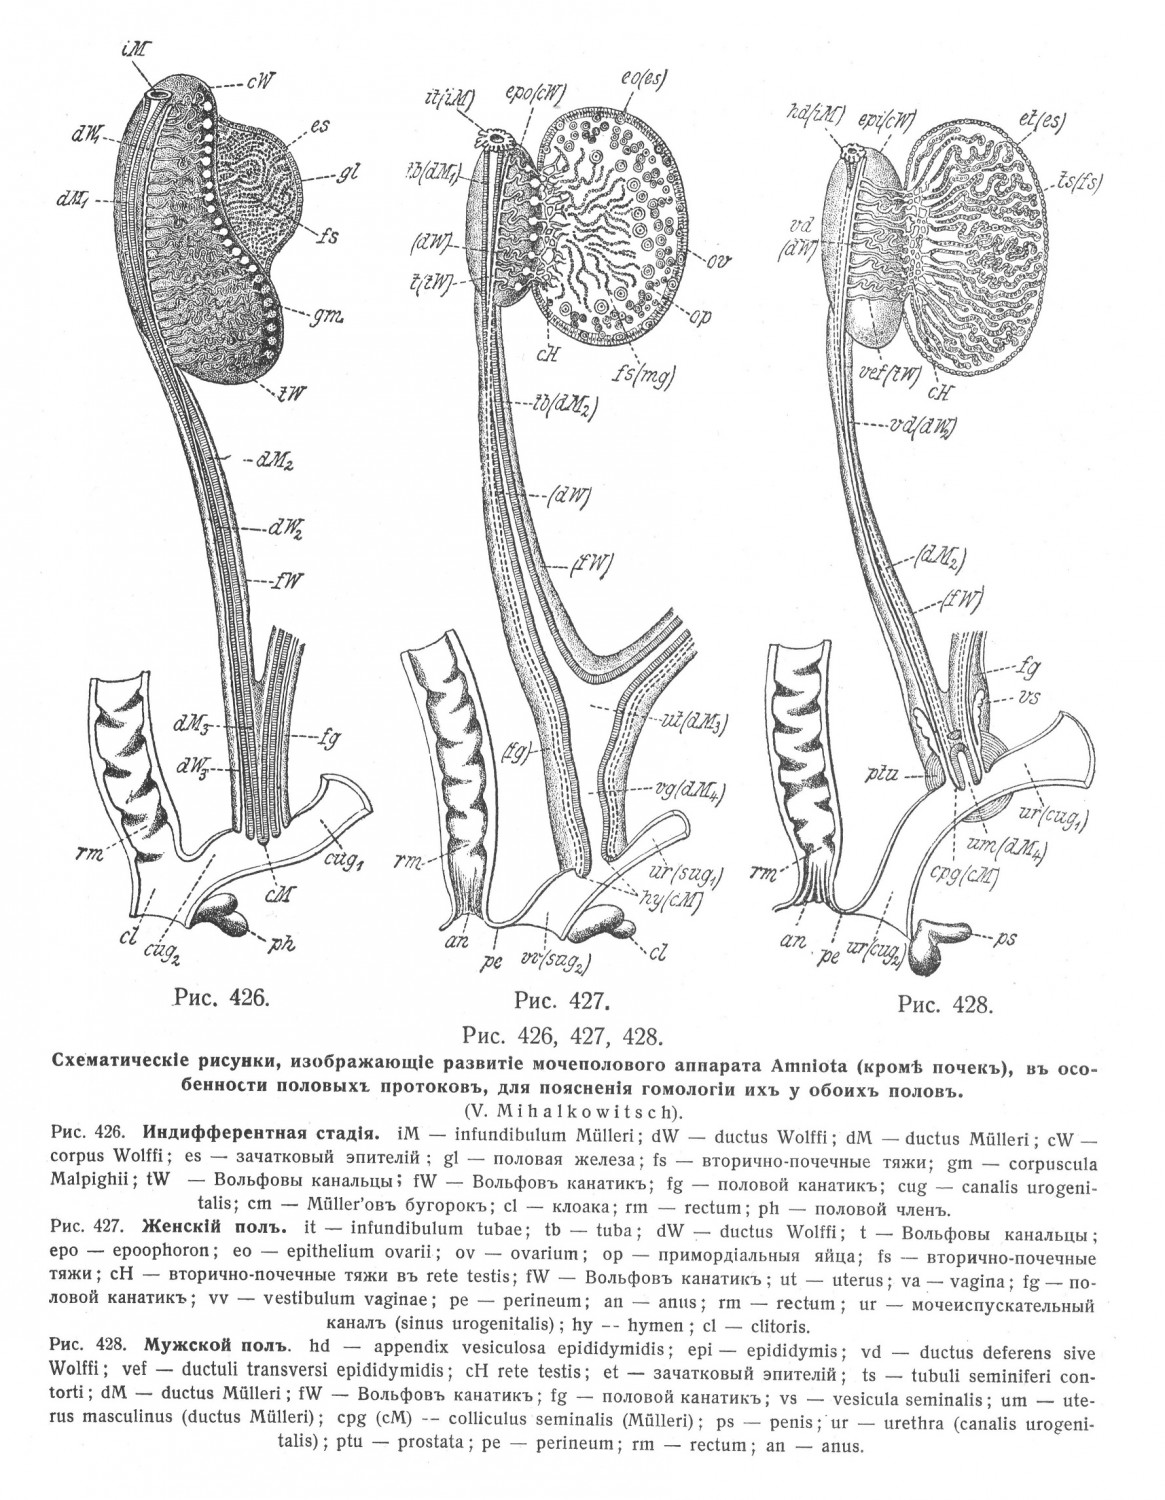 рисунки, изображающее развитие мочеполового аппарата Amniota